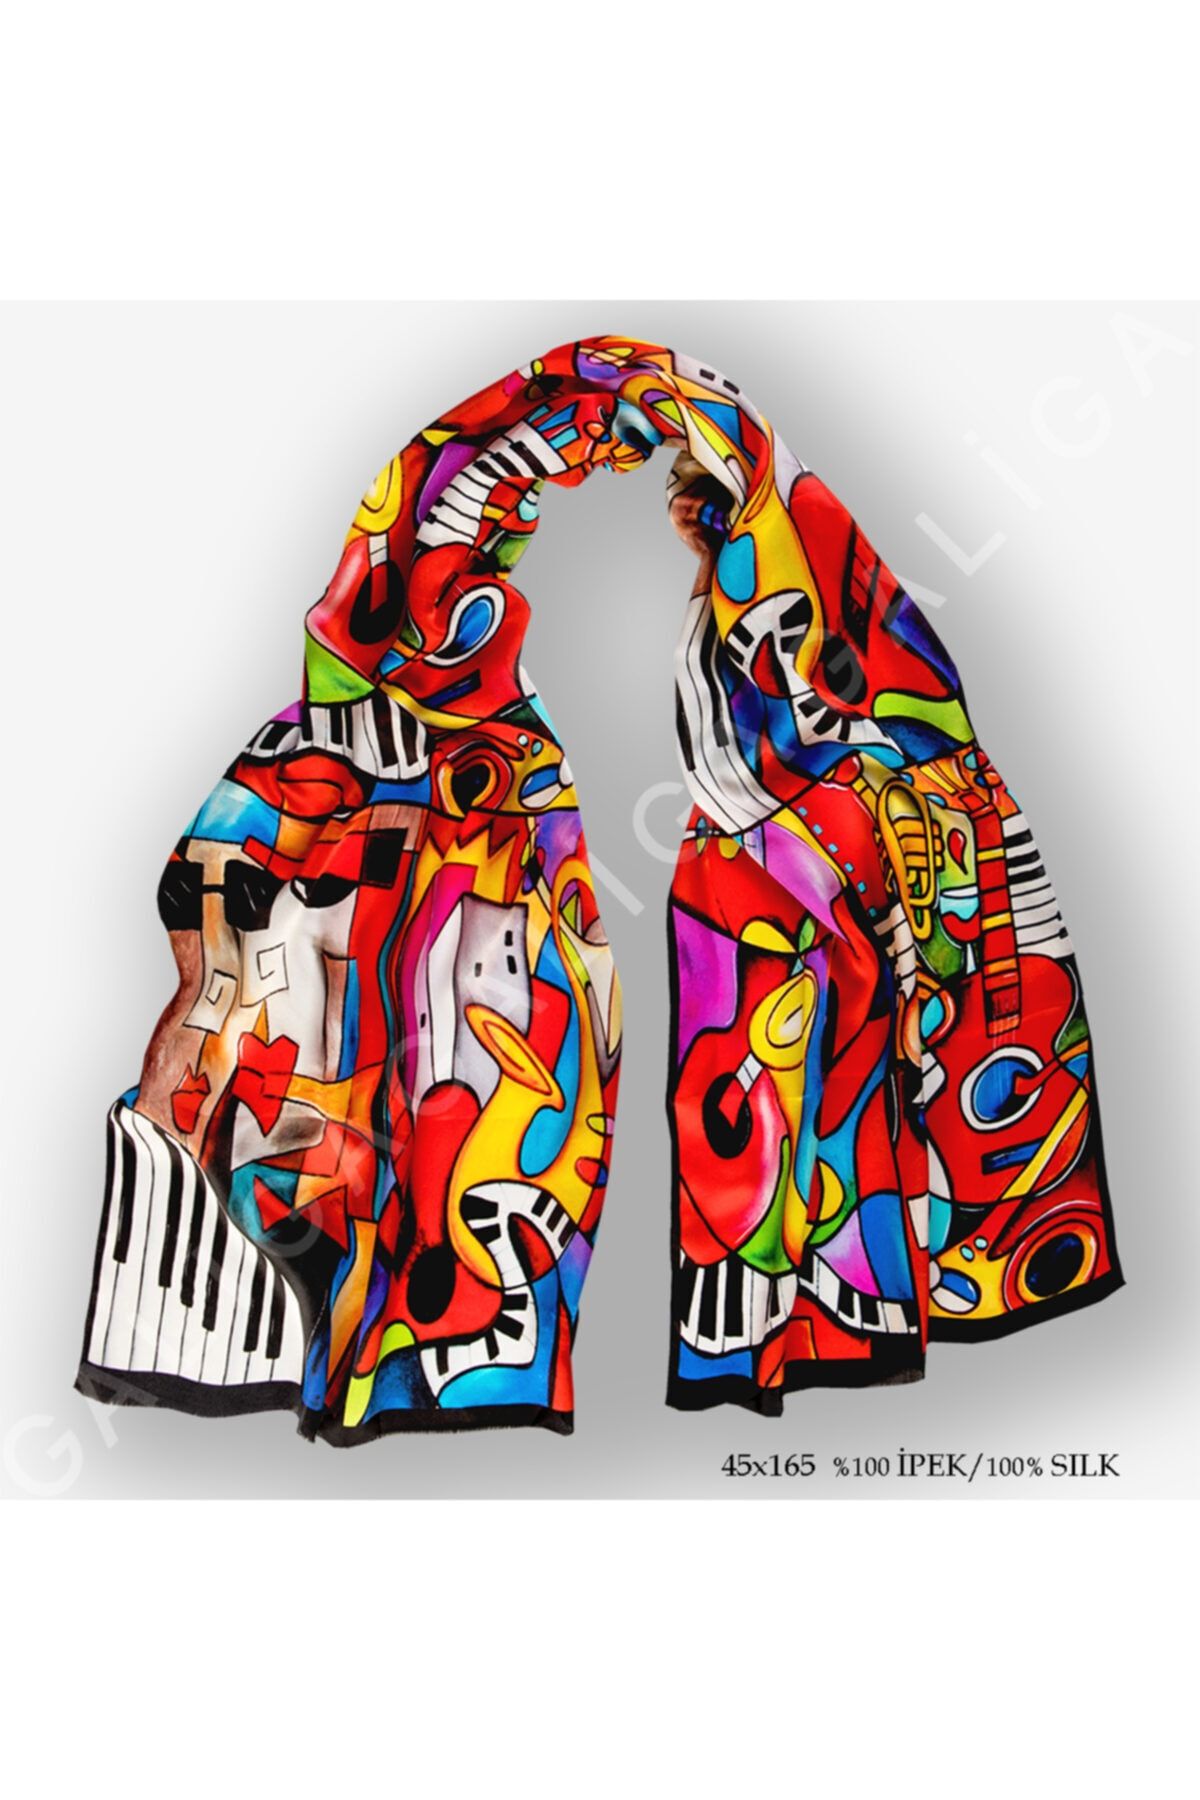 Galiga Cubic Jazz %100 Ipek Fular 45*165 cm Art On Silk